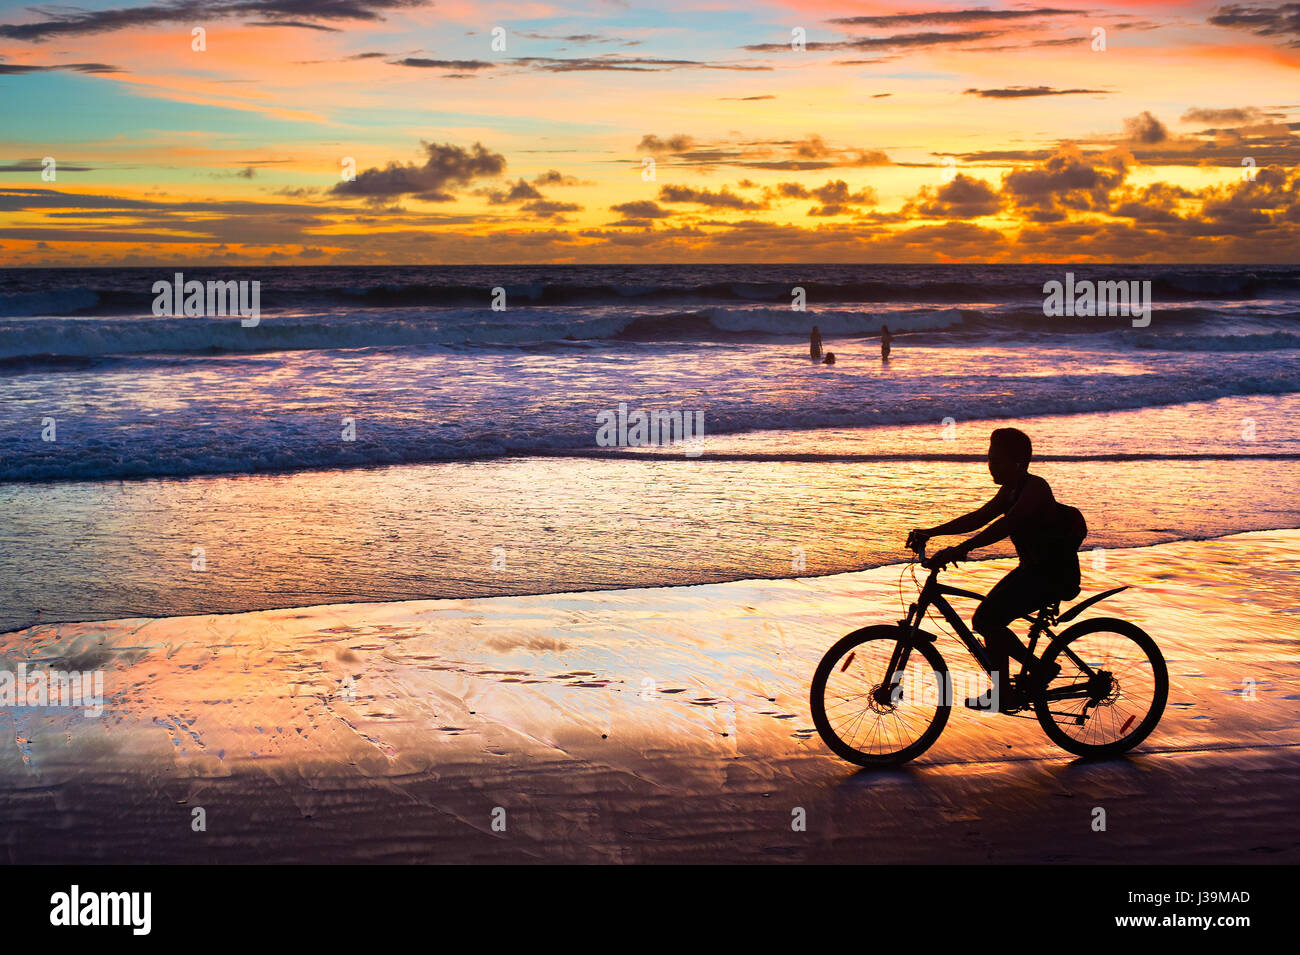 Silhouette di un uomo in sella ad una bicicletta al tramonto sulla spiaggia. Isola di Bali, Indonesia Foto Stock